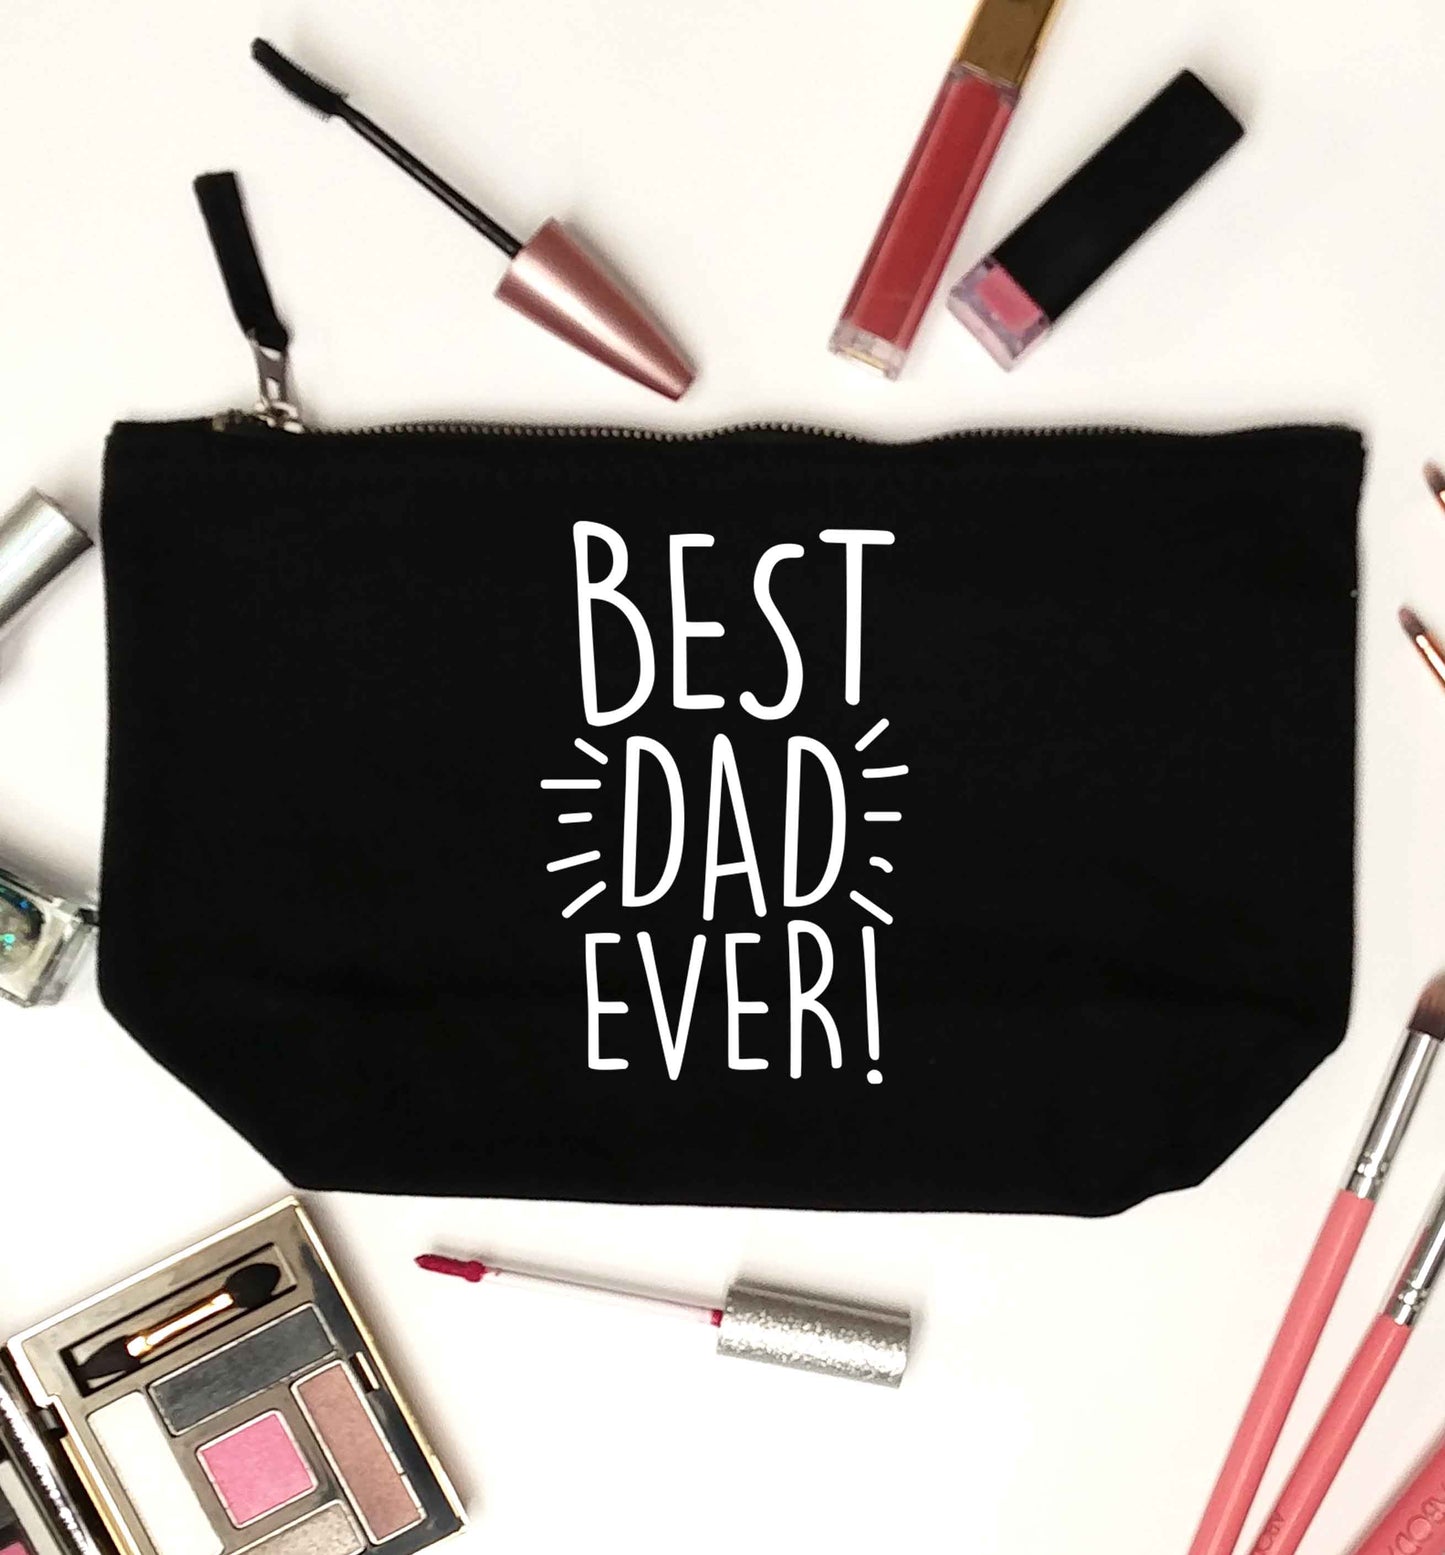 Best dad ever! black makeup bag